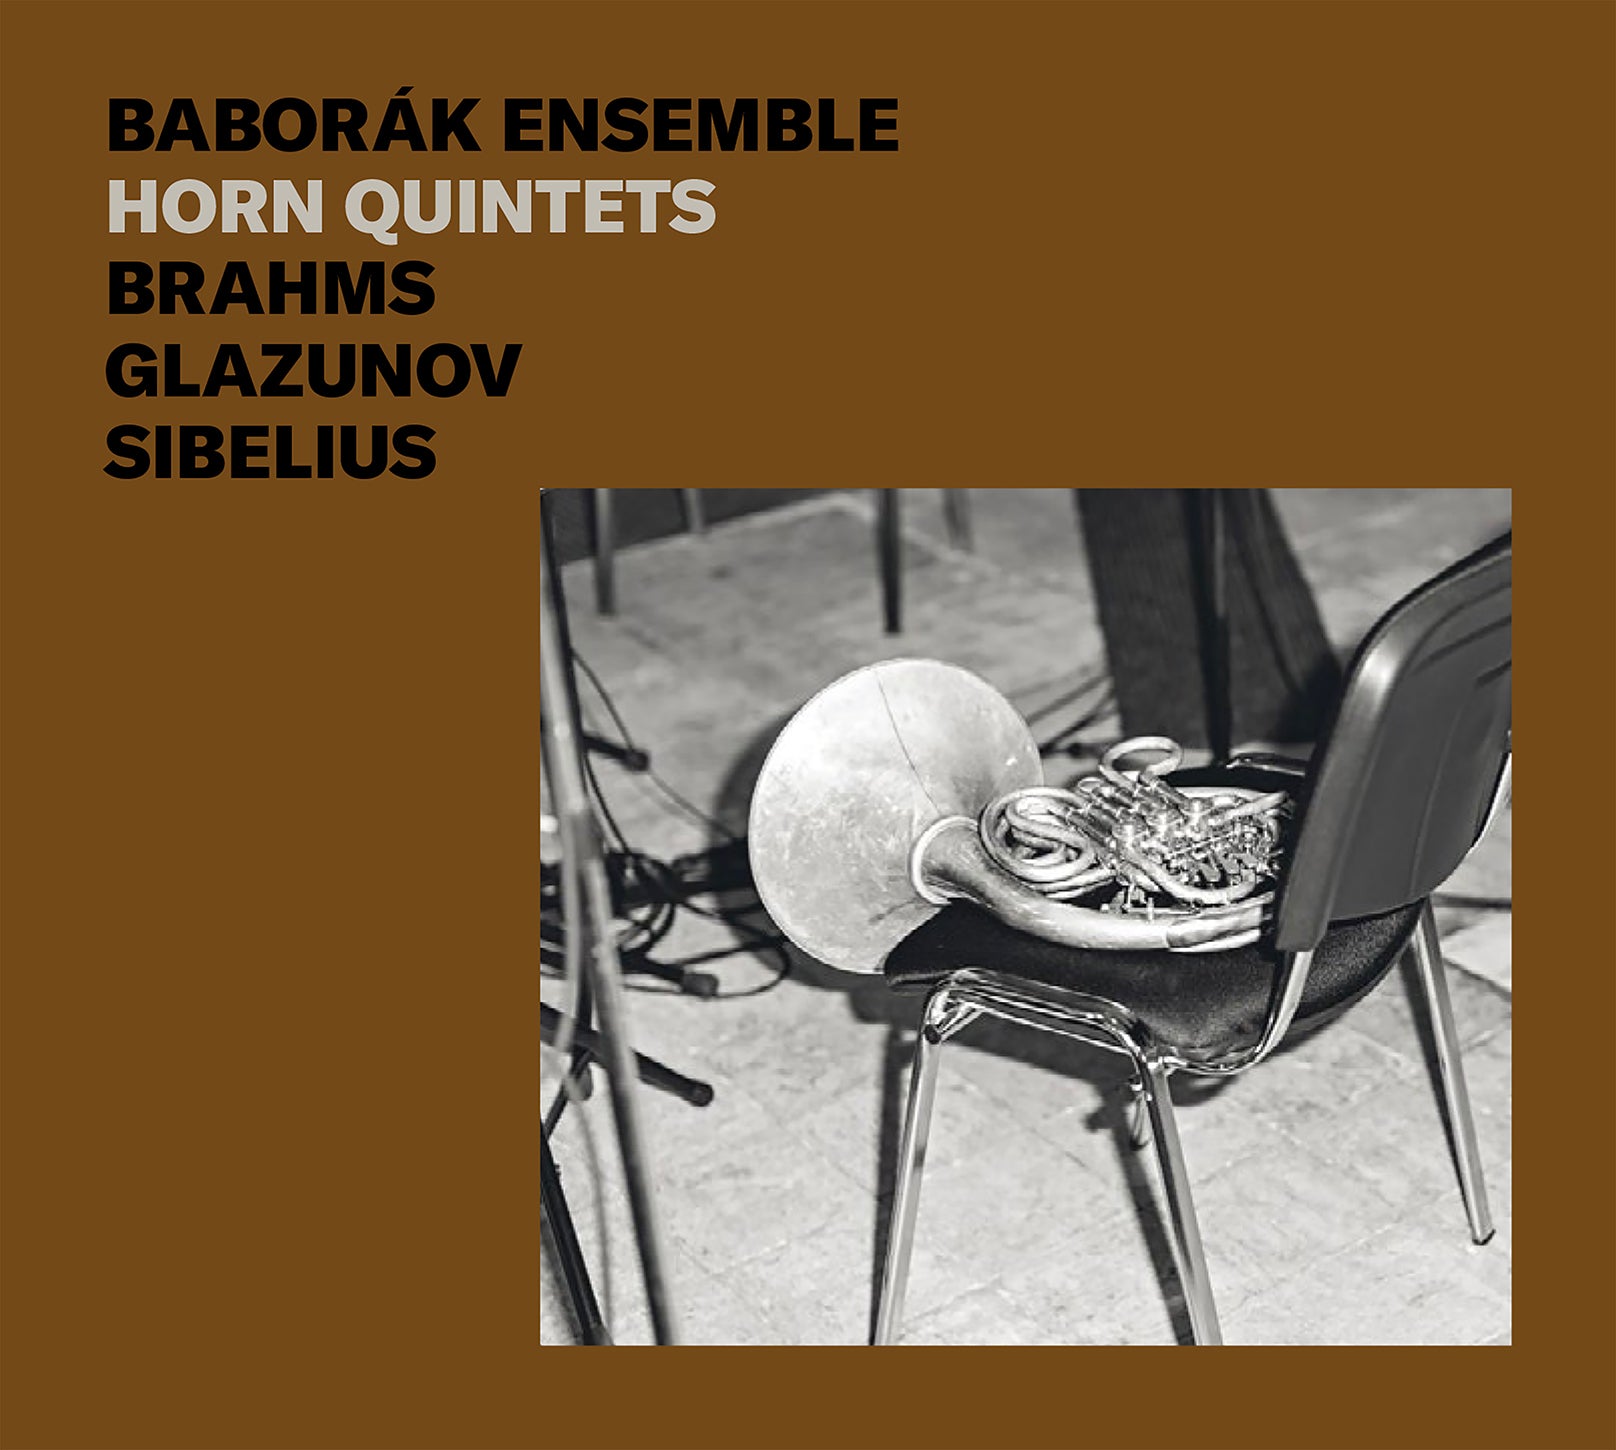 Brahms, Glazunov & Sibelius: Horn Quintets / Baborák Ensemble